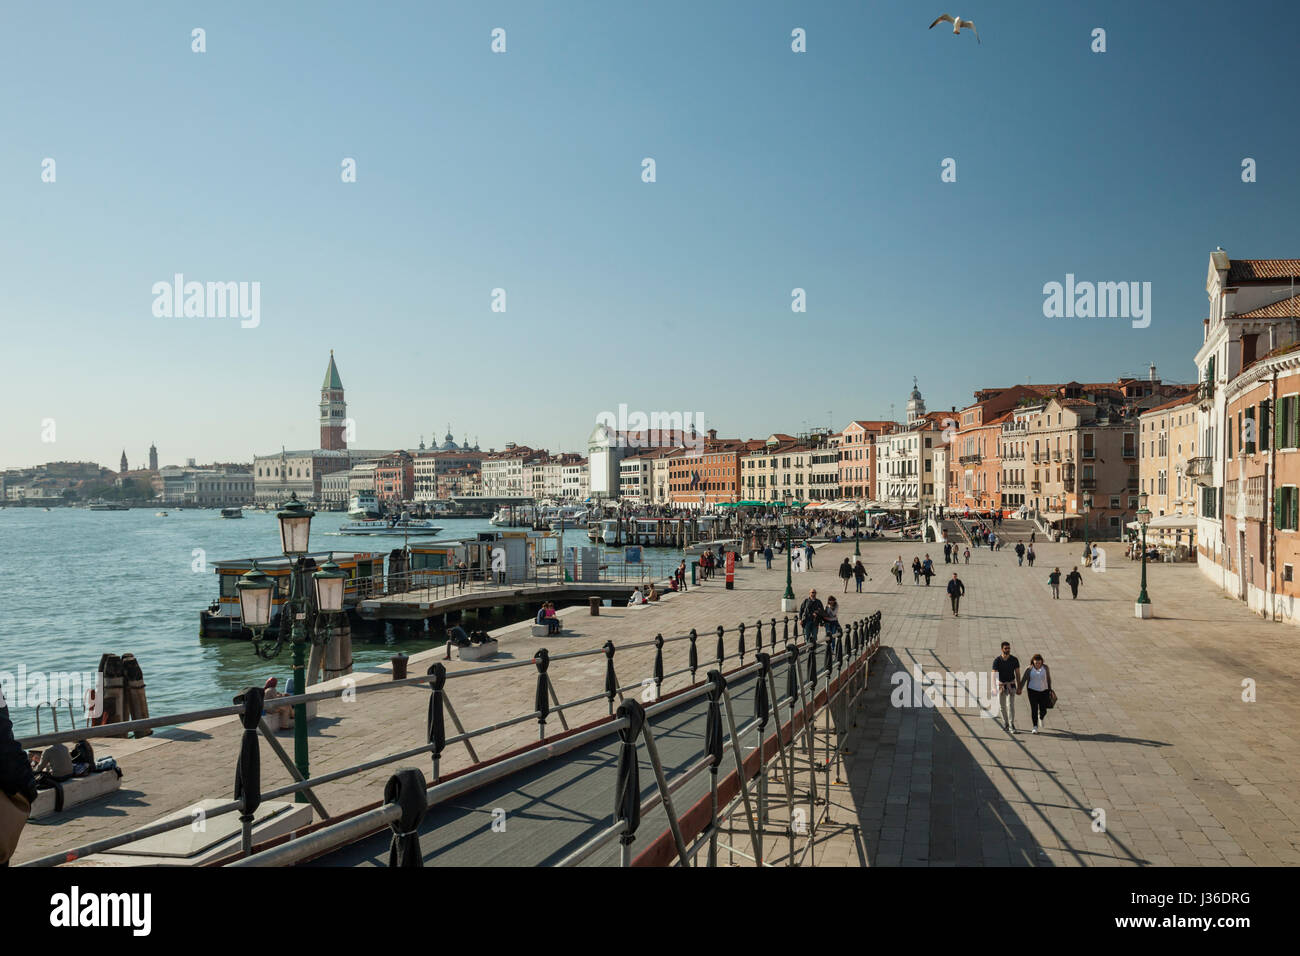 Die Skyline von Stadtteil Castello in Venedig. Campanile di San Marco in der Ferne. Stockfoto